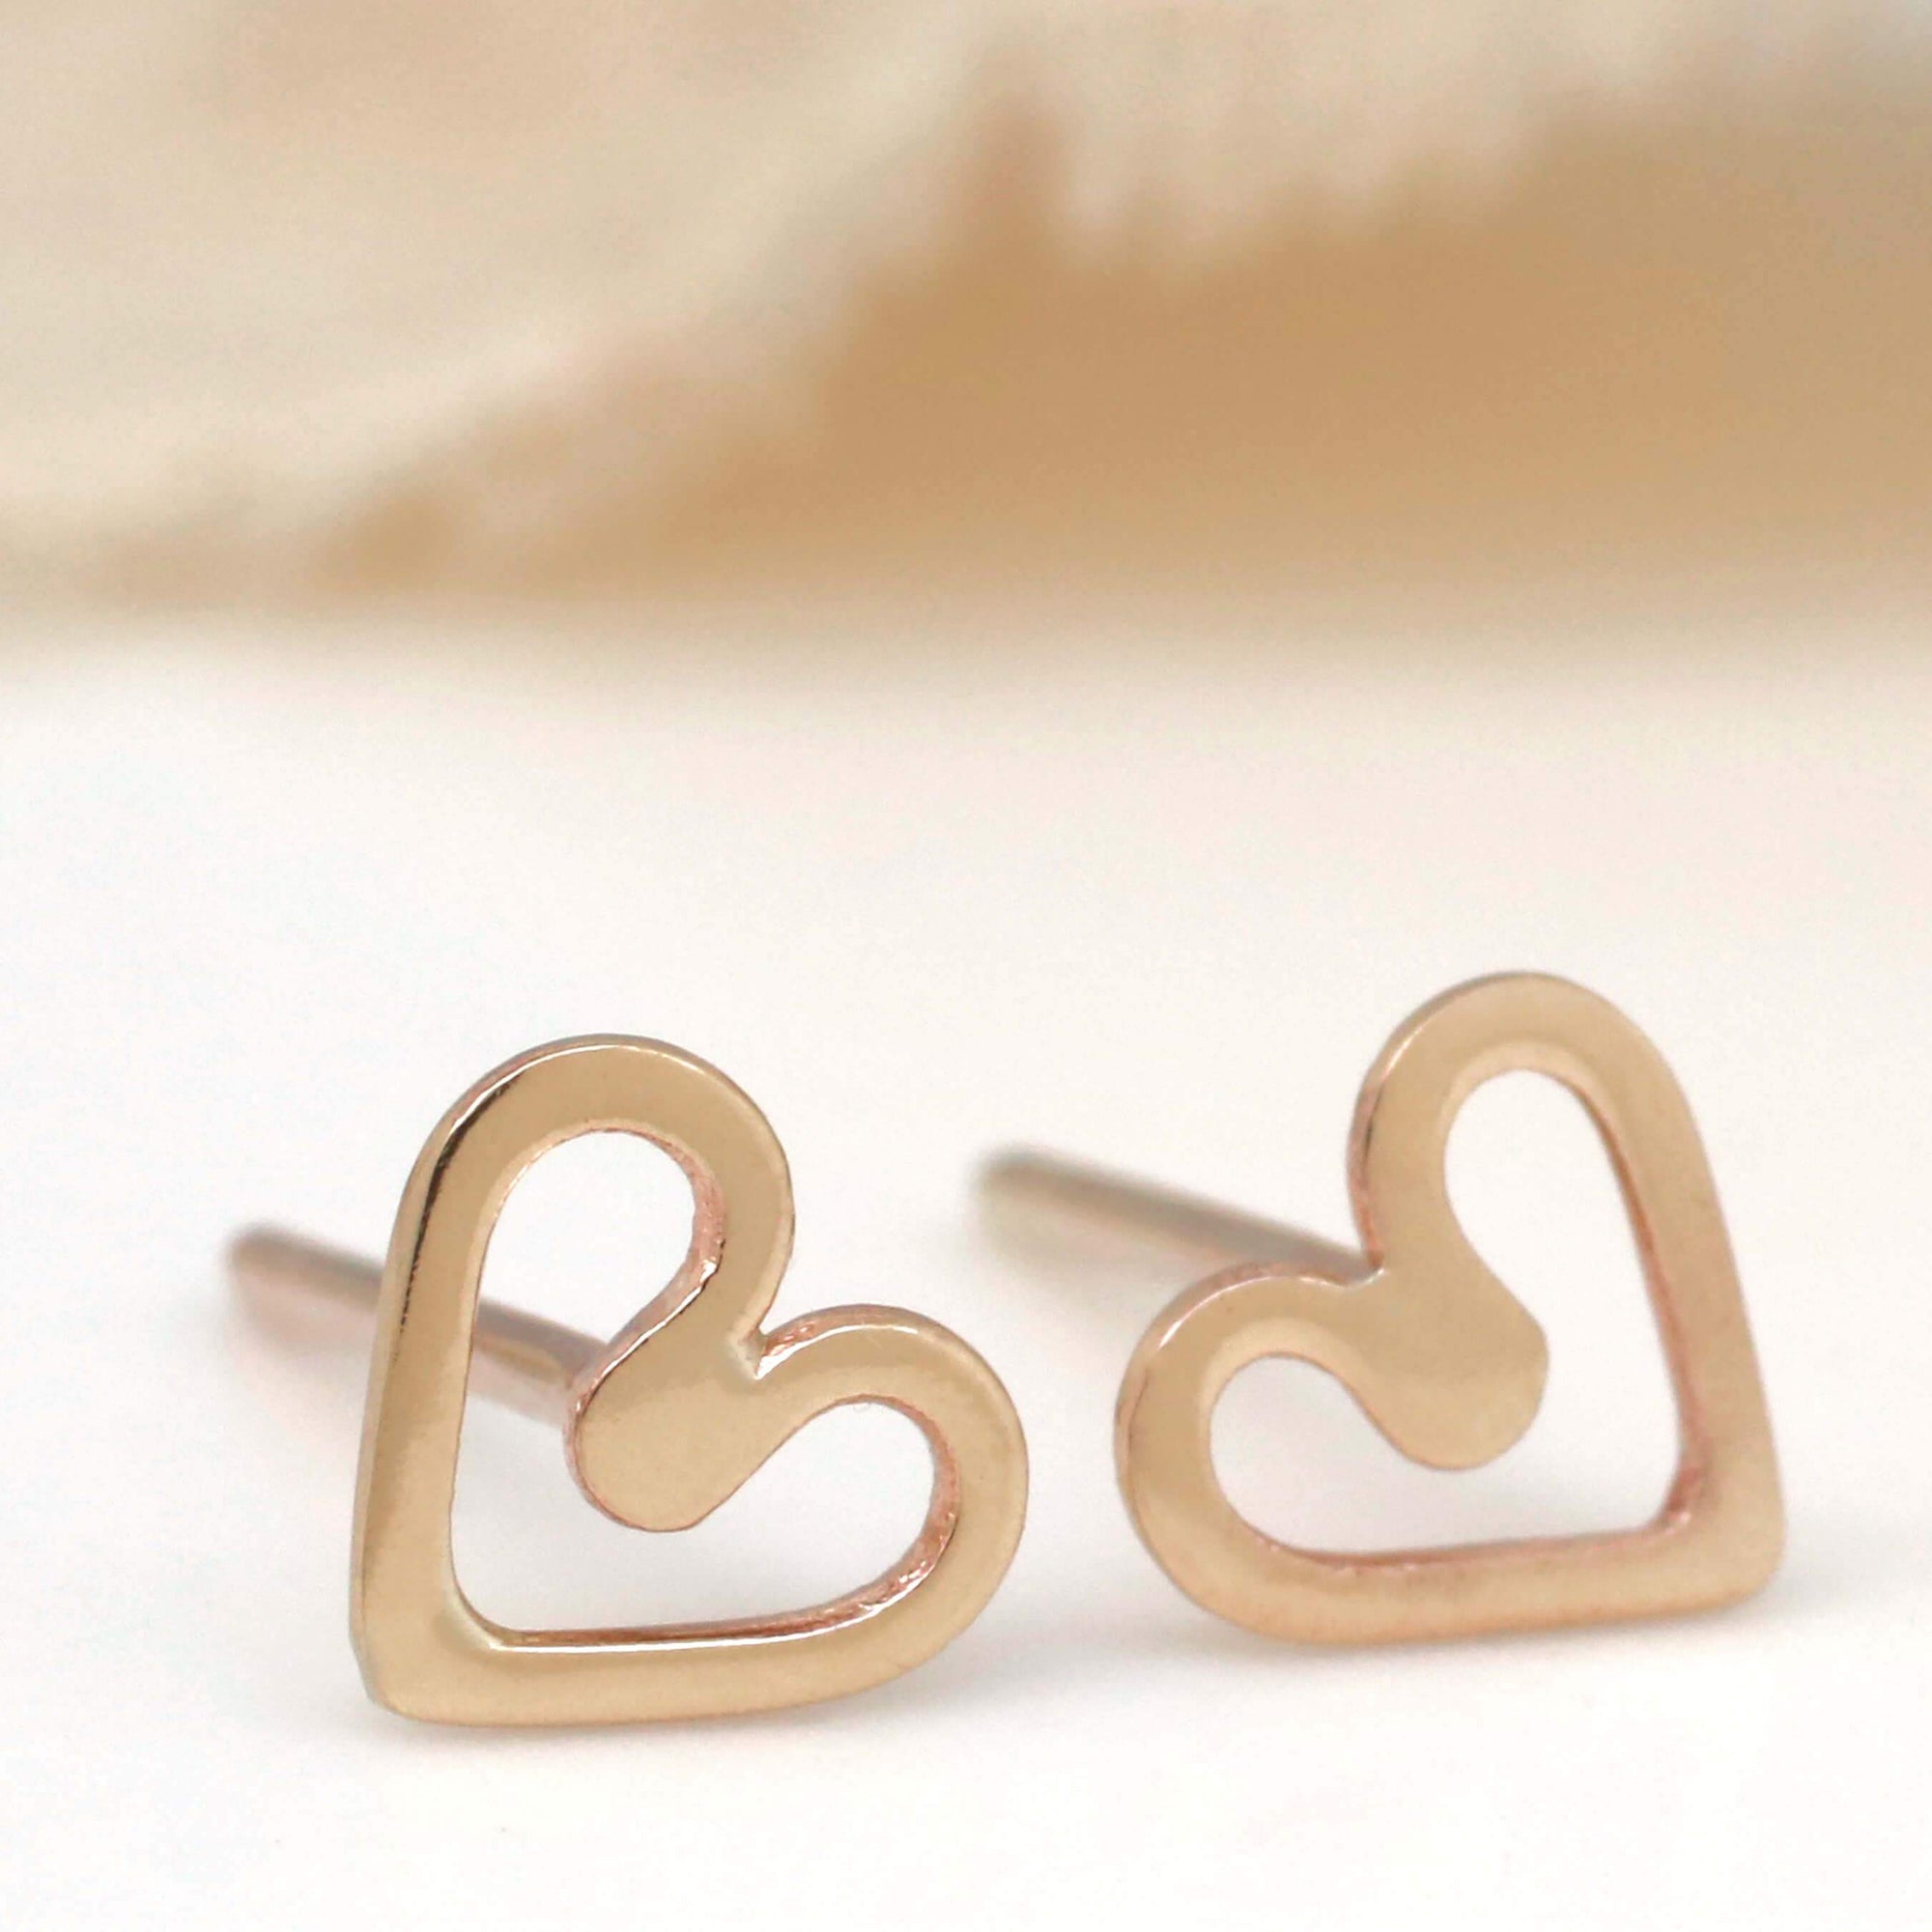 9ct Gold Tiny Earrings Heart Stud Earrings Louy Magroos